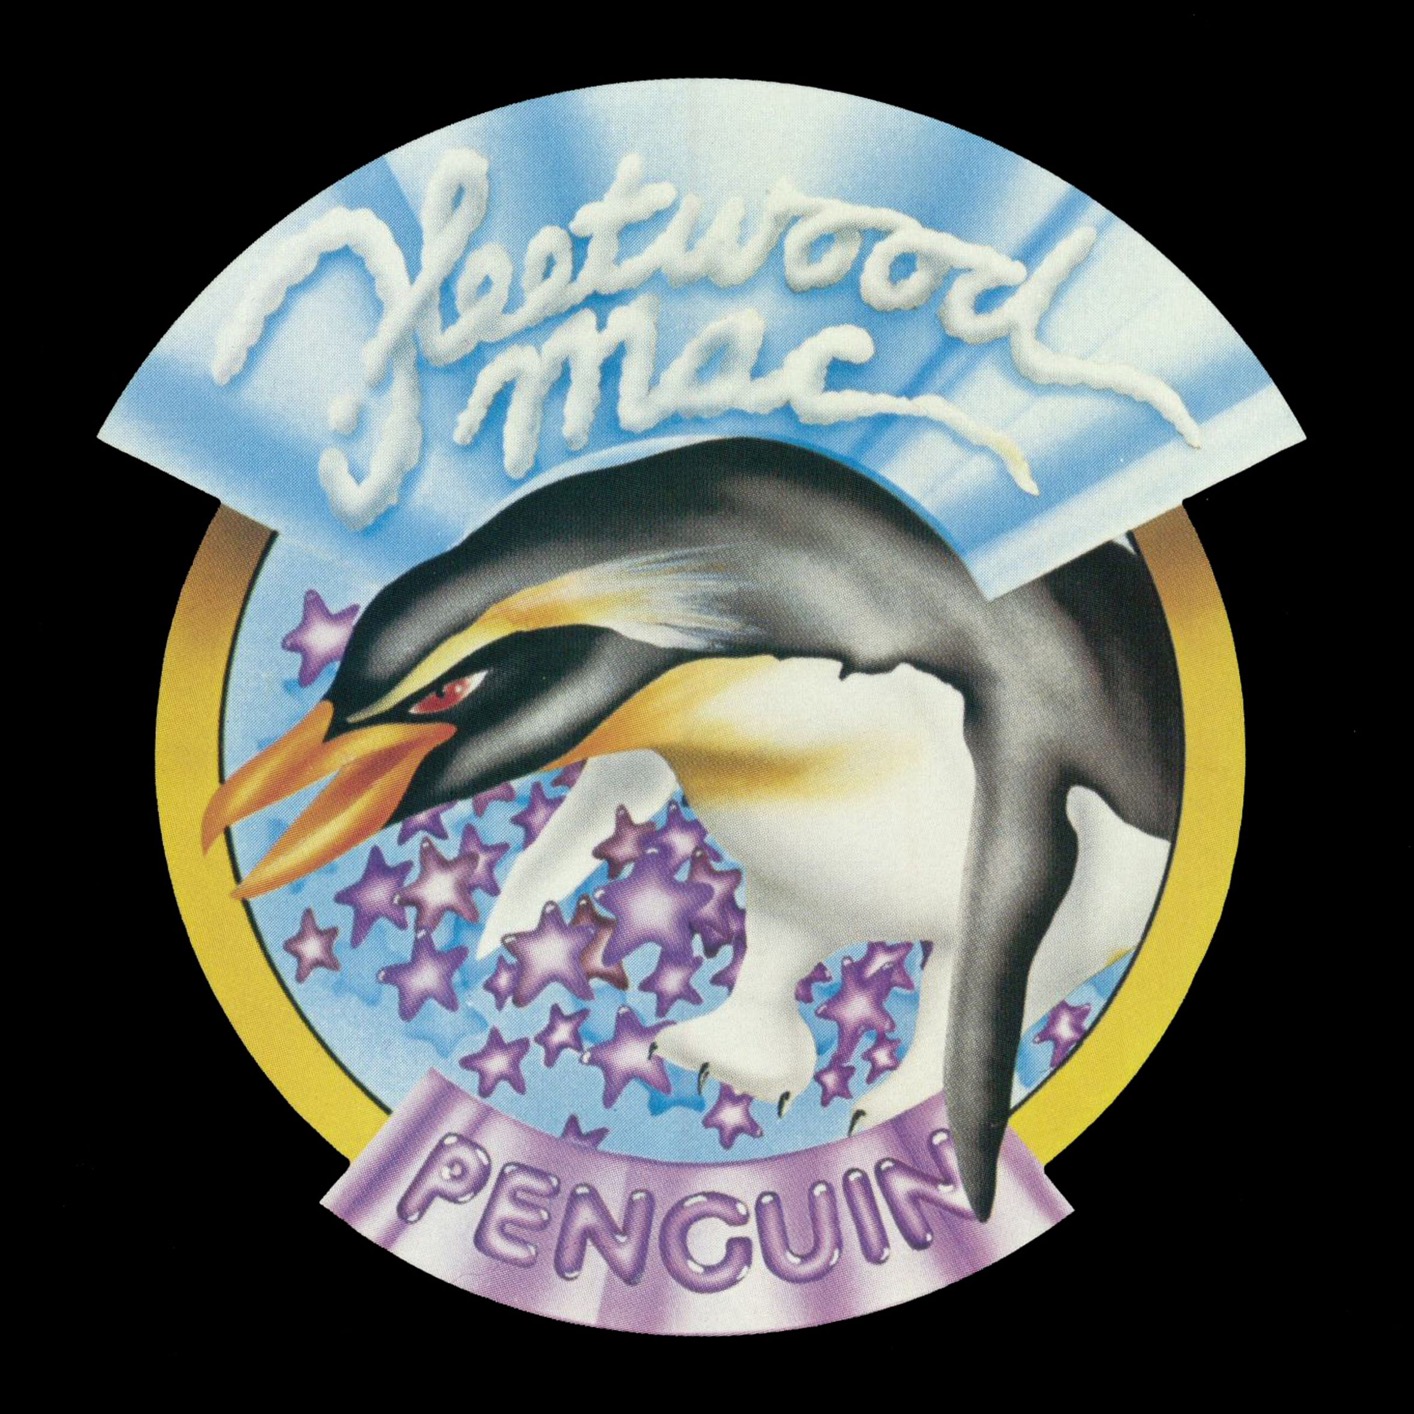 Fleetwood Mac – Penguin (1973/2017) [Mora FLAC 24bit/192kHz]